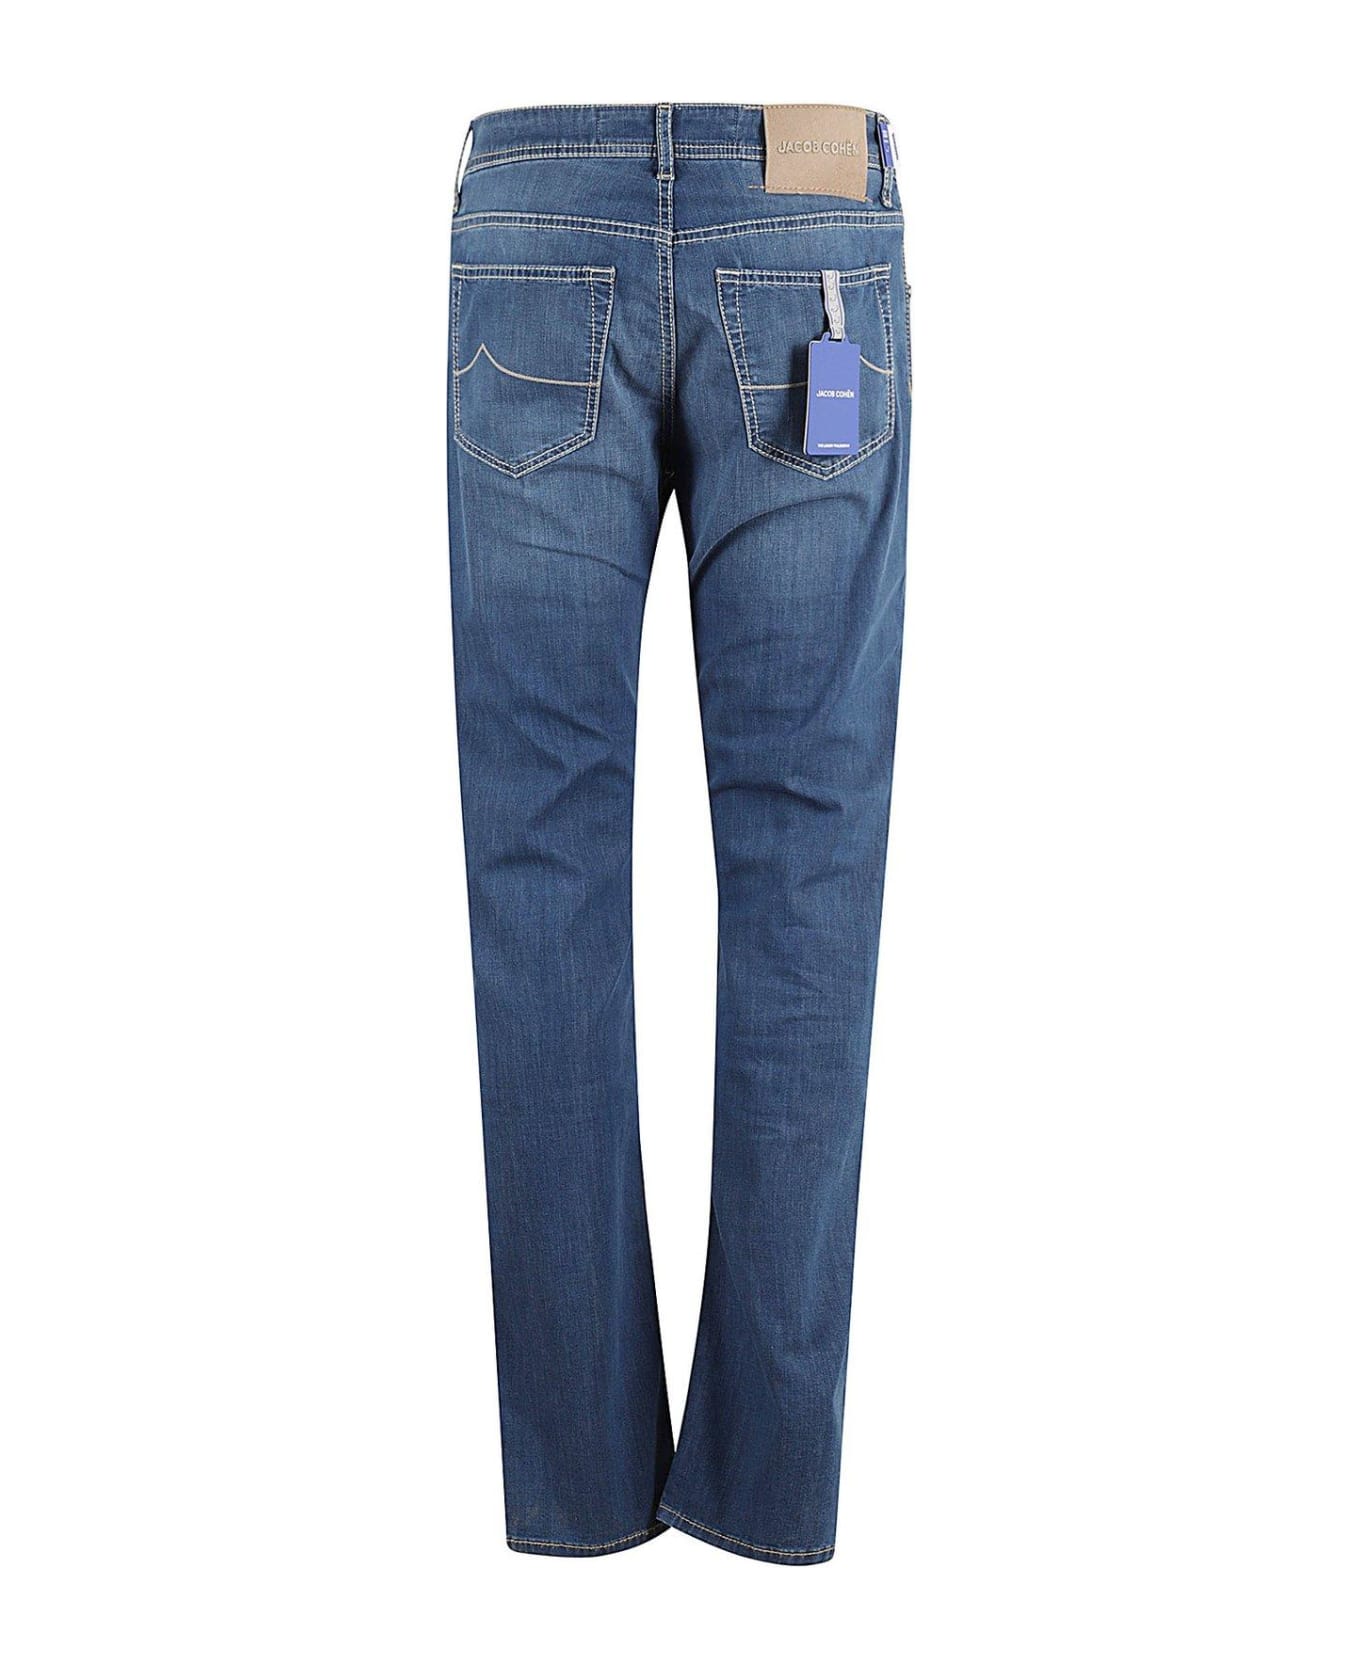 Jacob Cohen Slim Fit Jeans - DENIM BLUE デニム